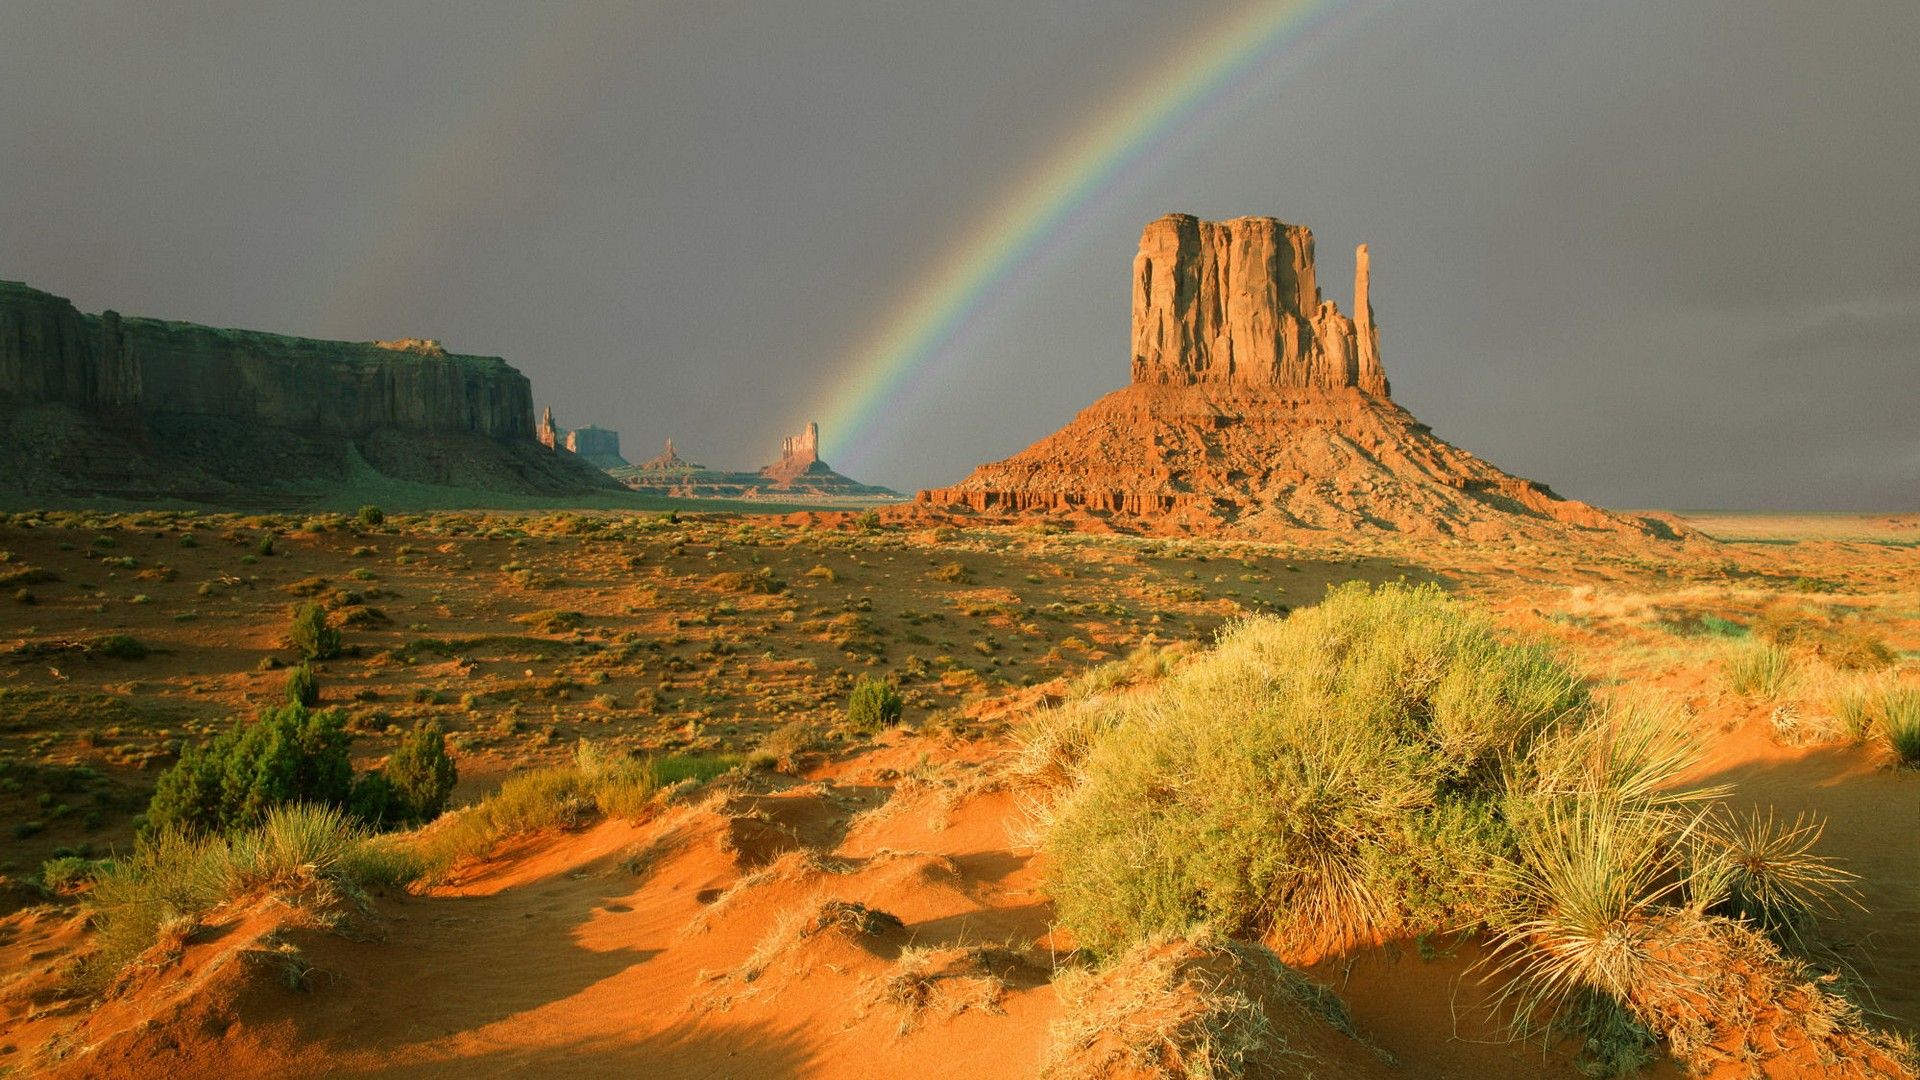 Arizona Monument Valley Navajo Tribal Park